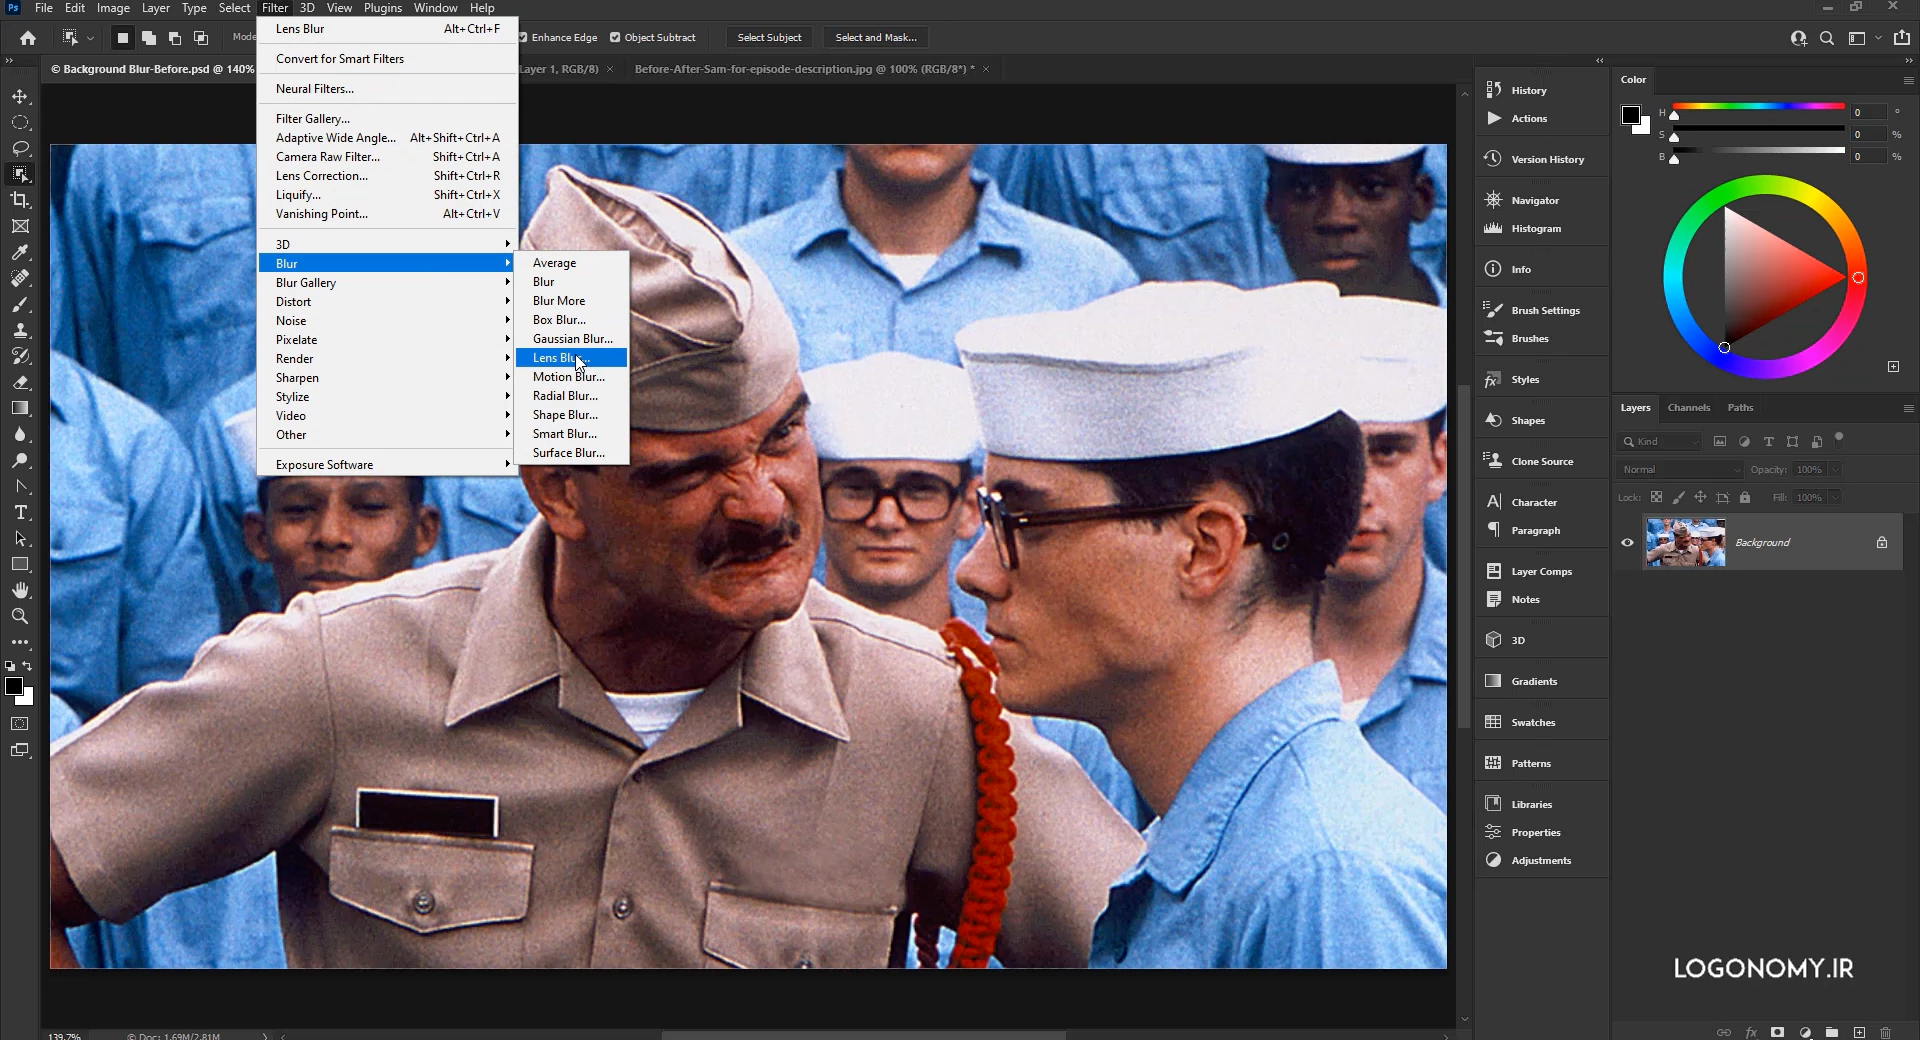 ایجاد عمق تصویر در برنامه فتوشاپ (photoshop) با فیلتر لنز بلر (Lenz blur)